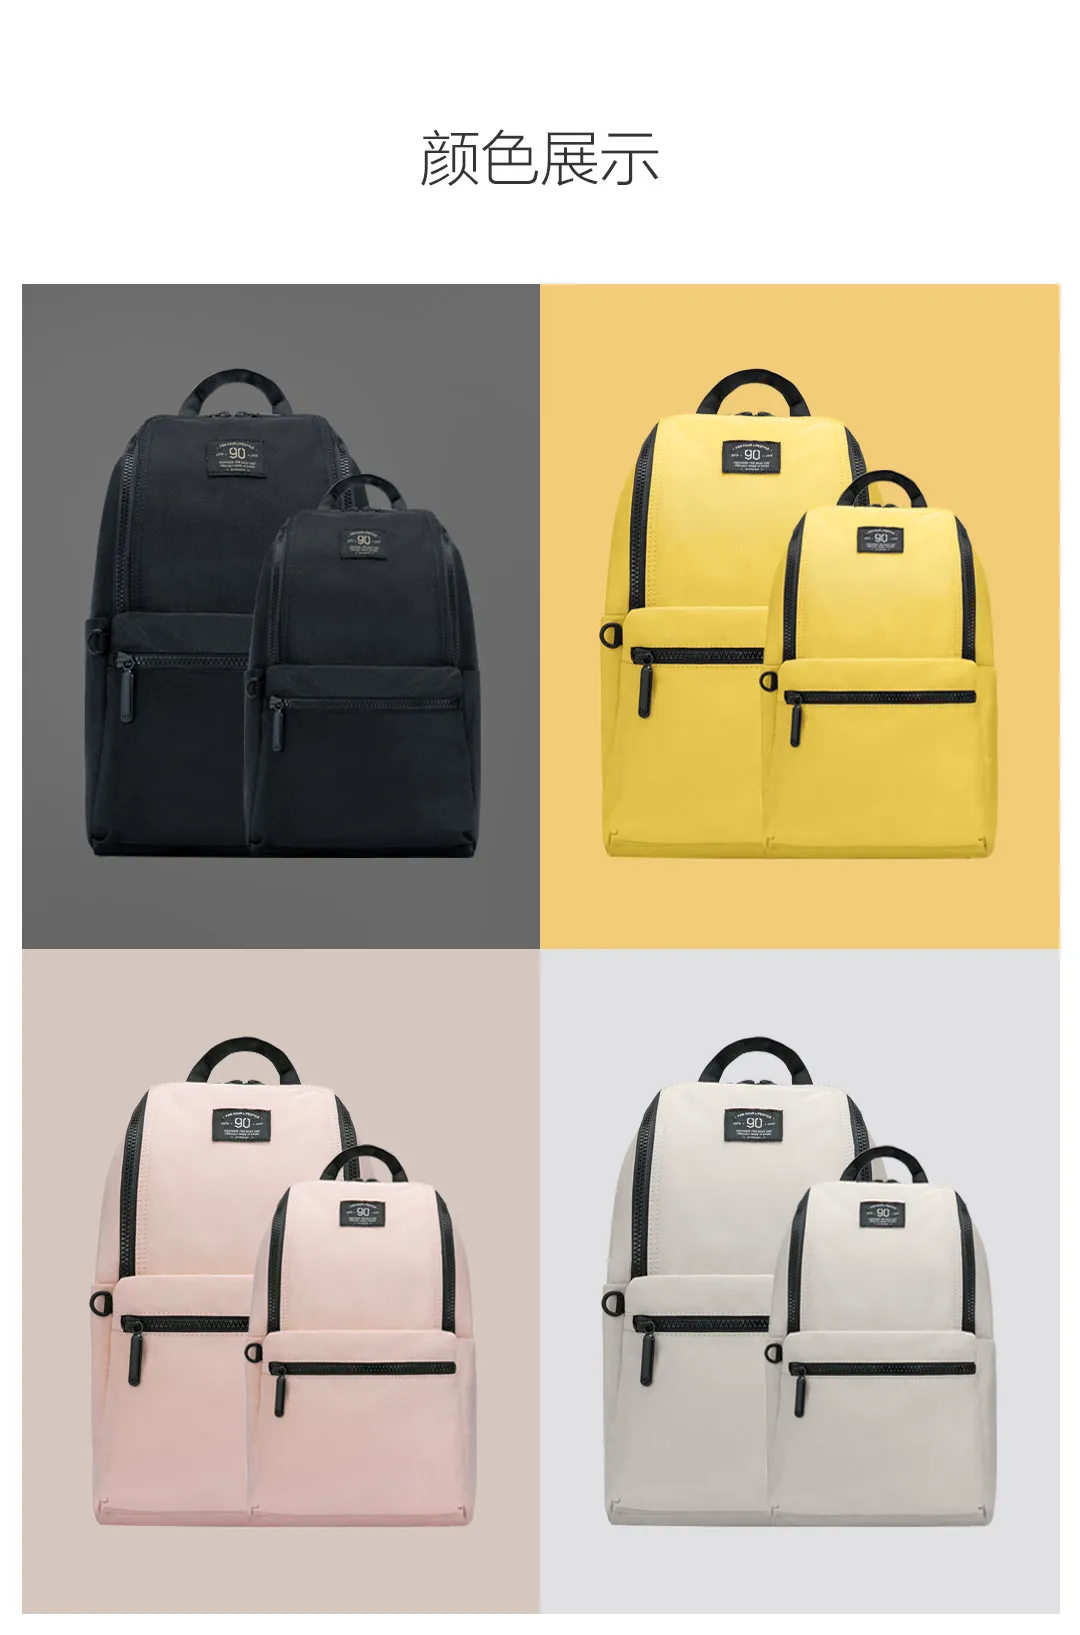 Xiaomi 90fun Backpack Ipx4 Water Repellent WaterProof Unisex 18L/10L School Bag Laptop Bags for Women Men Kids Children